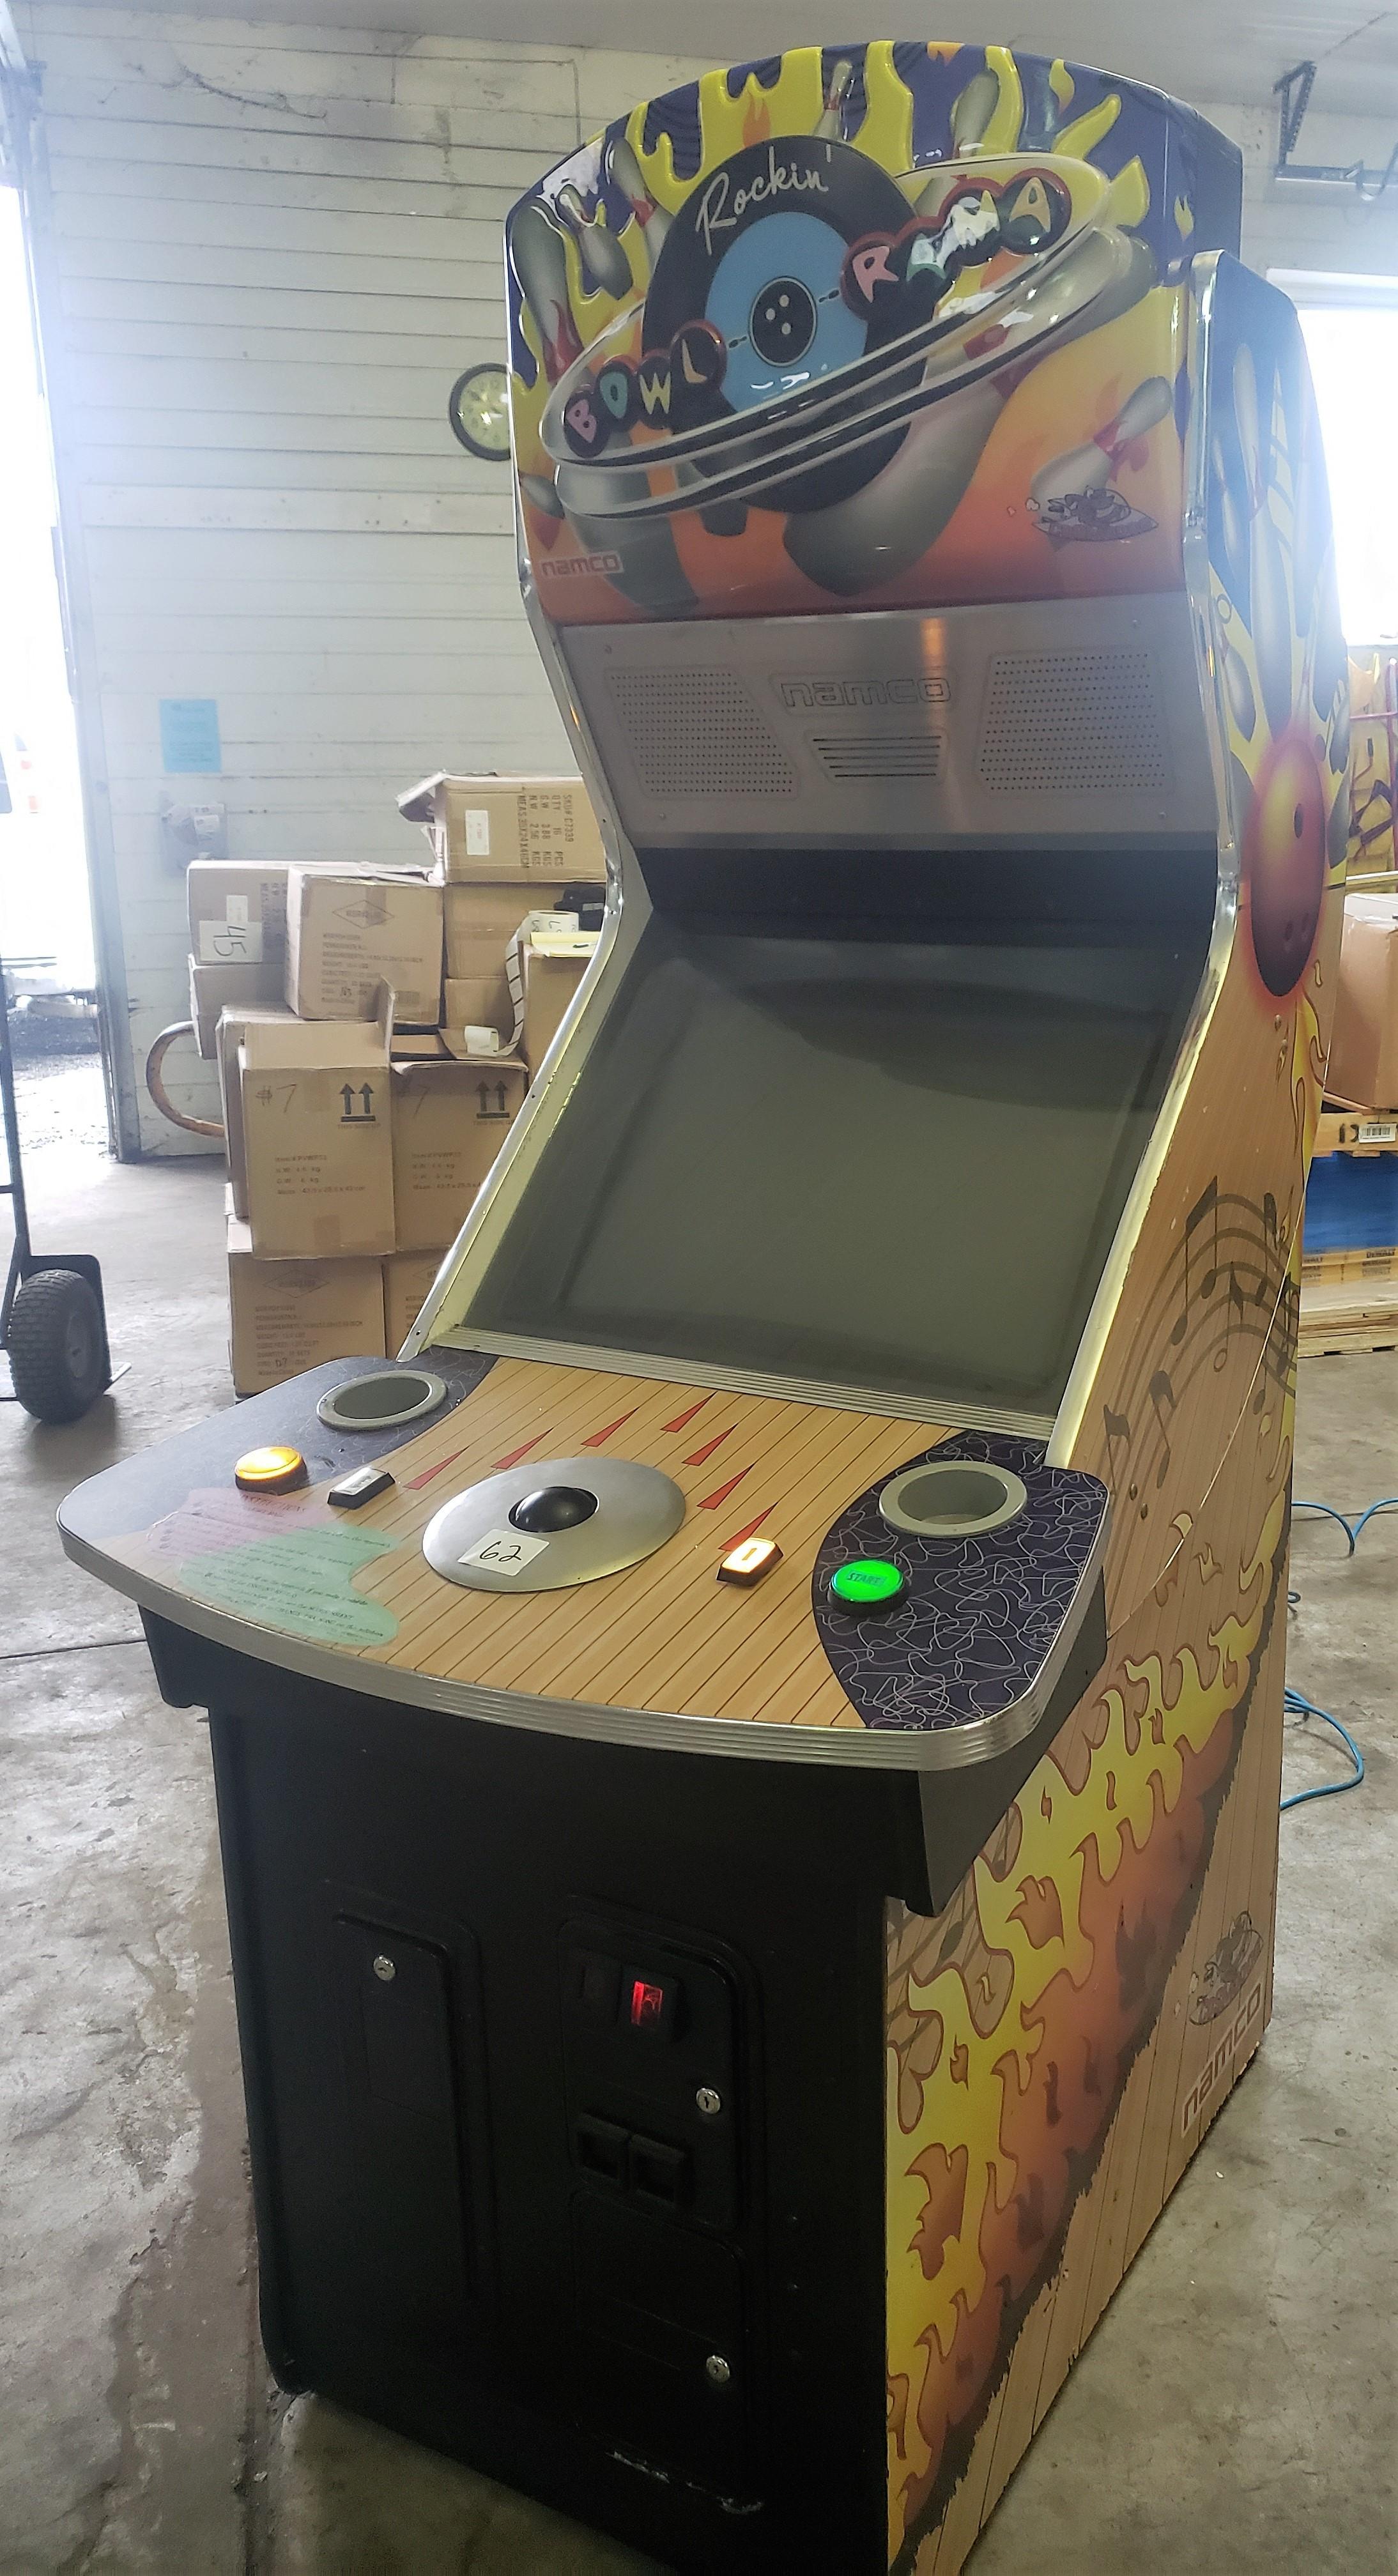 Rockin Bowl-O-Rama Arcade Machine